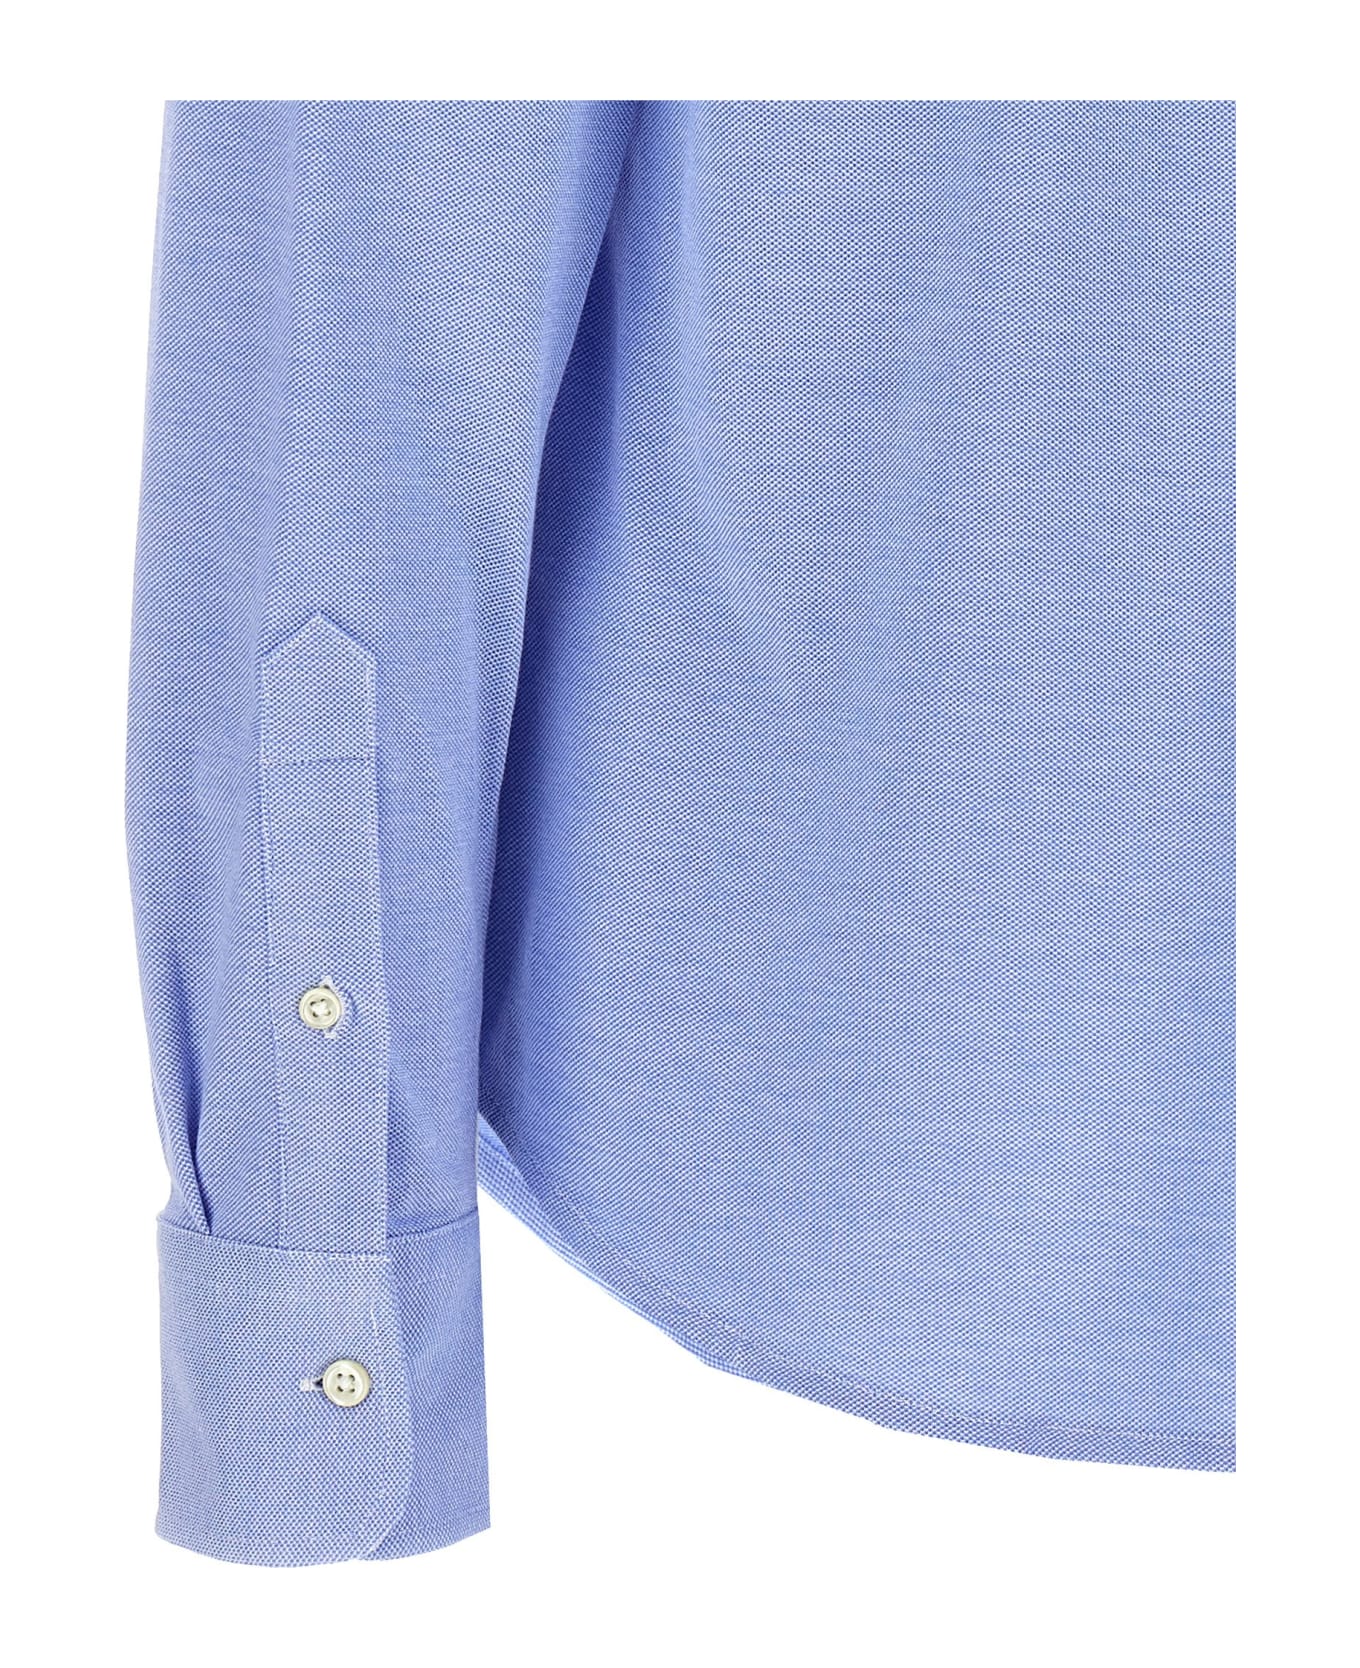 Ralph Lauren 'heidi' Shirt - Light Blue